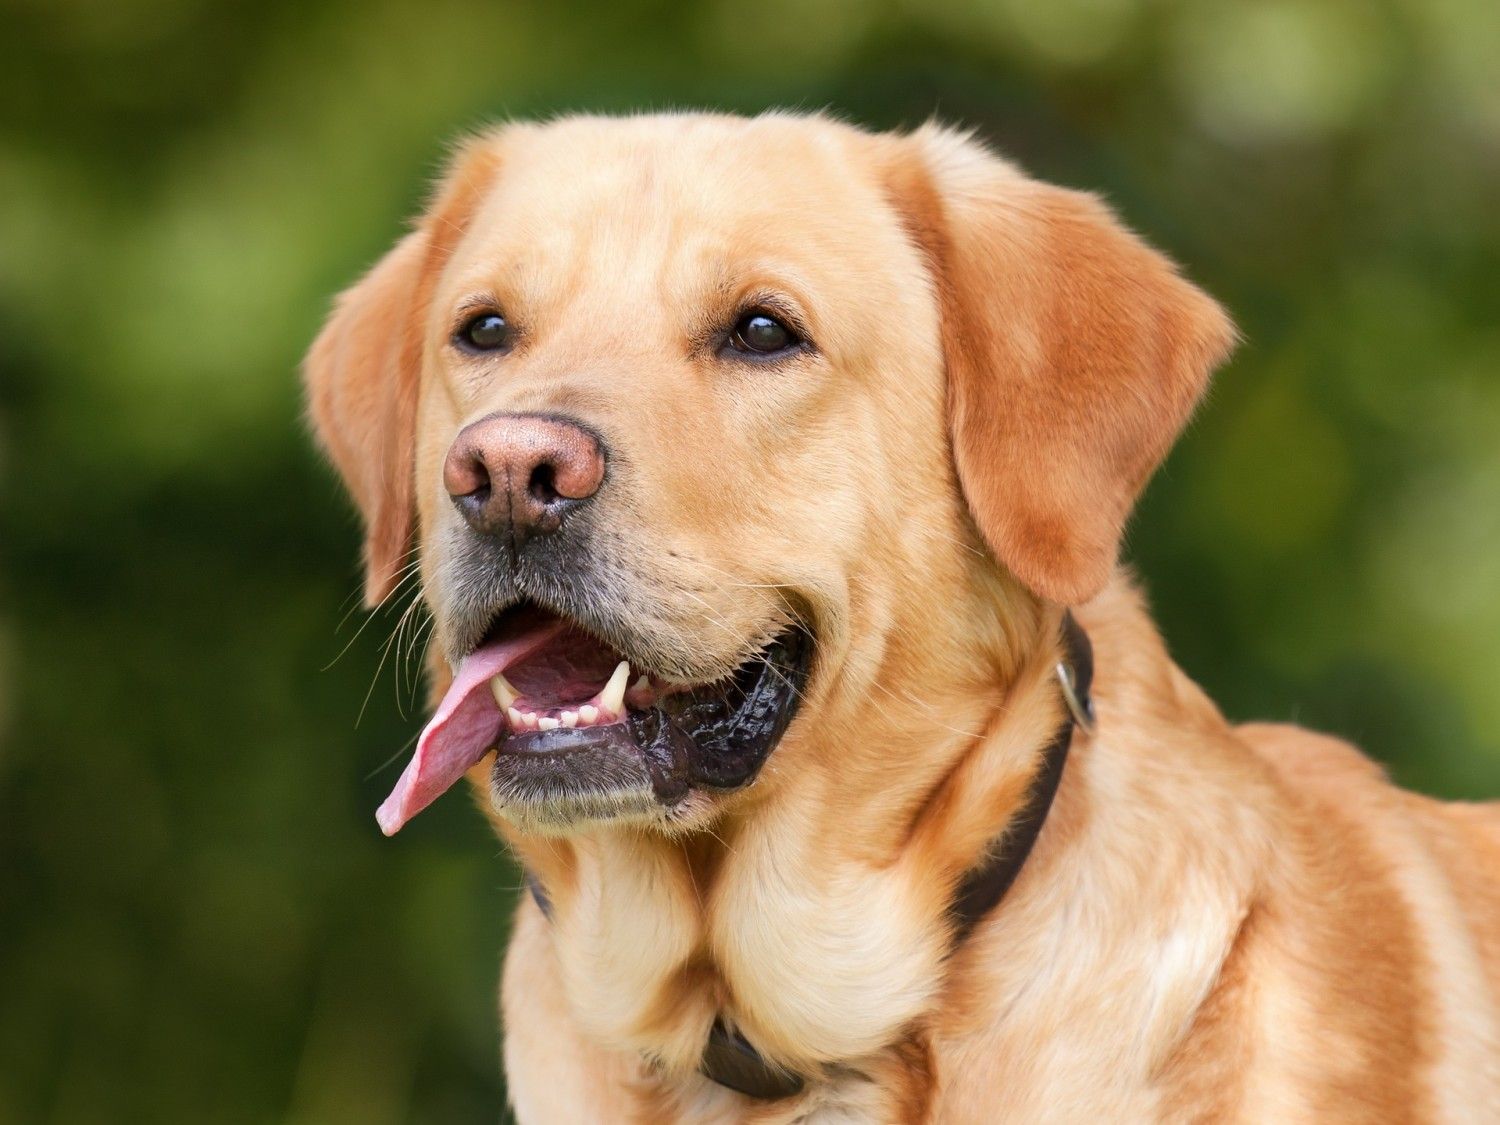 Loš zadah kod pasa: Ako miris postane intenzivniji, vrijeme je za posjet veterinaru